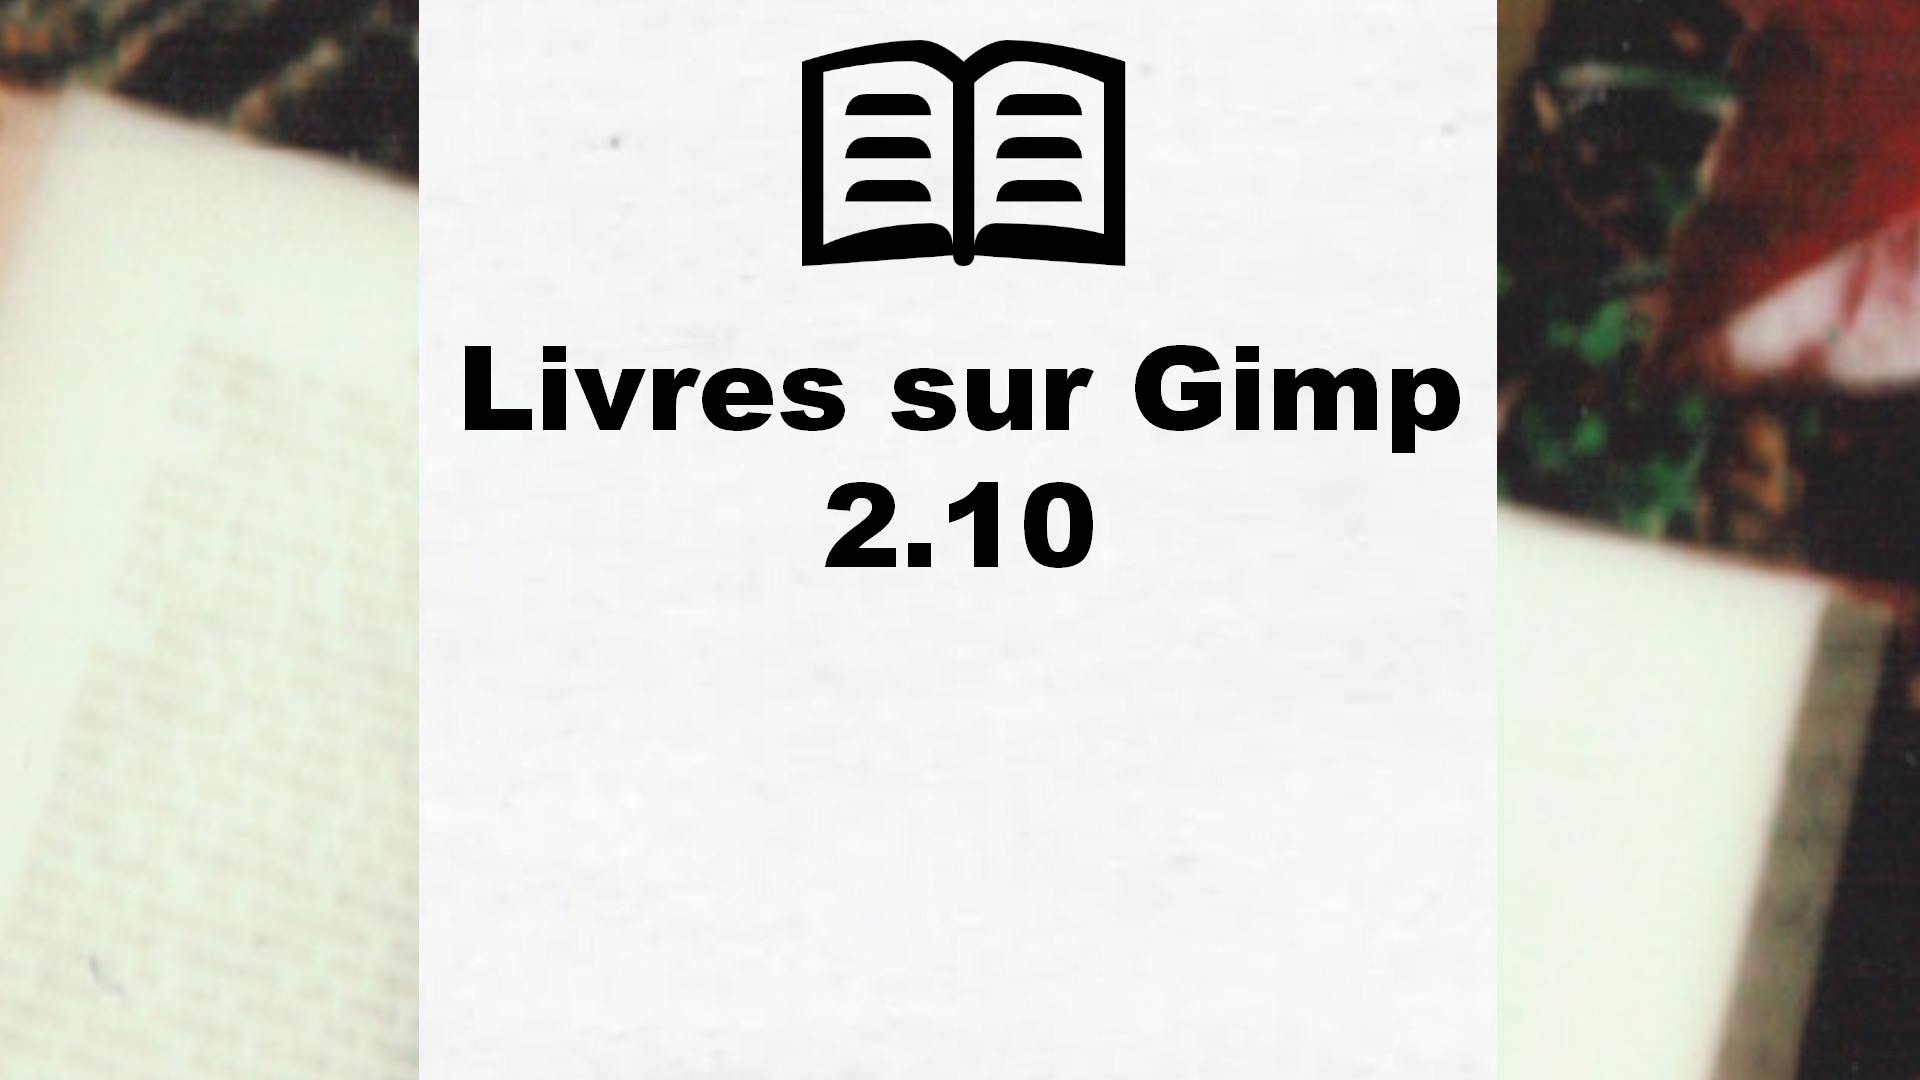 Livres sur Gimp 2.10